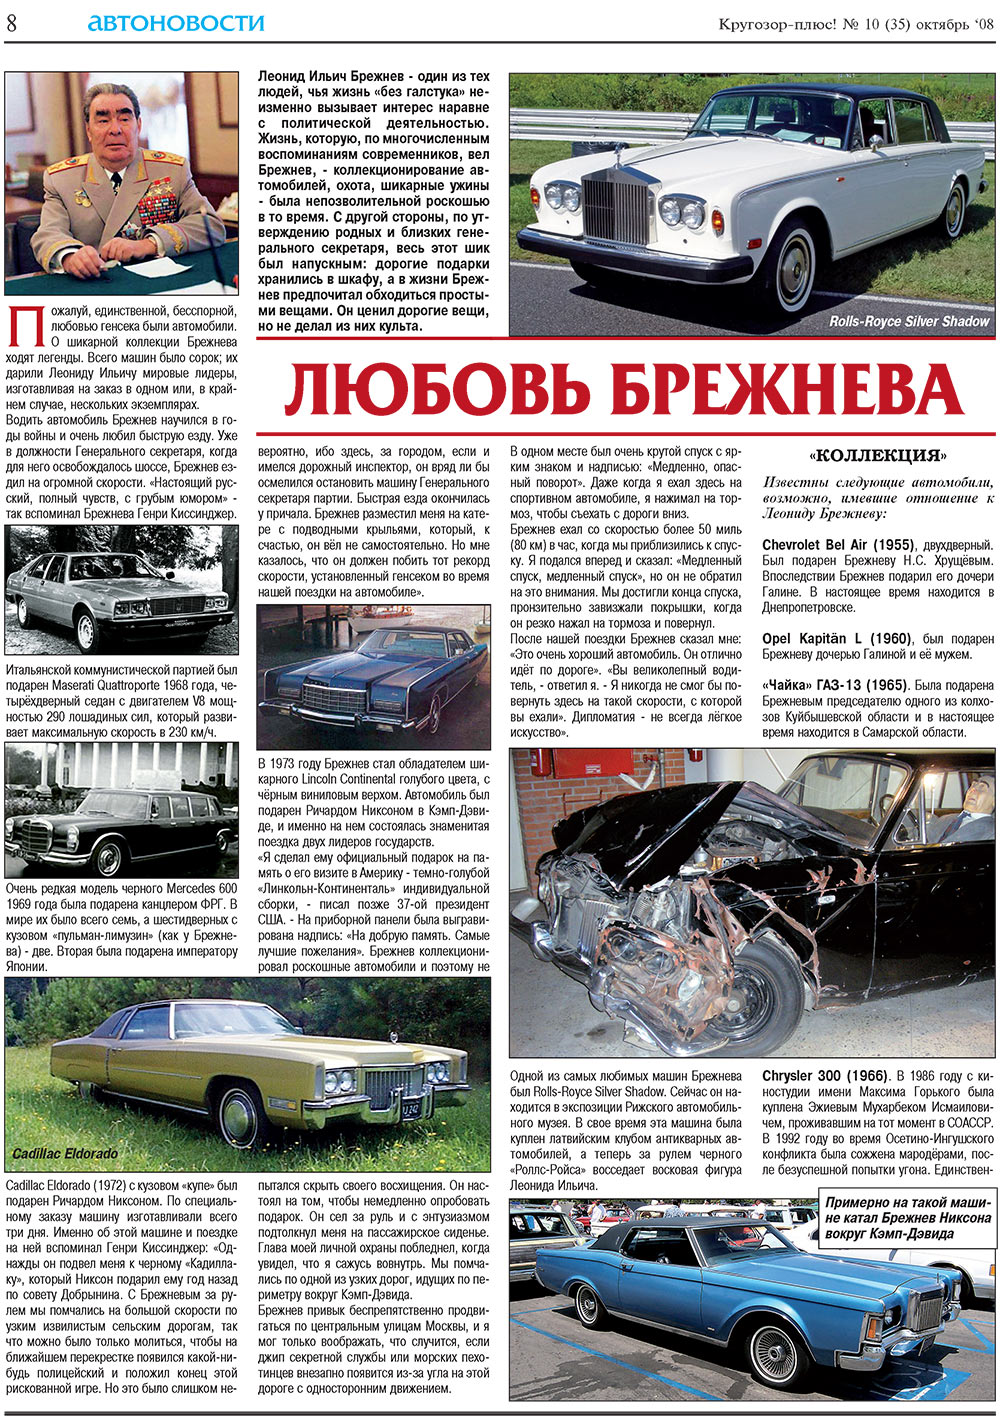 Кругозор плюс!, газета. 2008 №10 стр.8